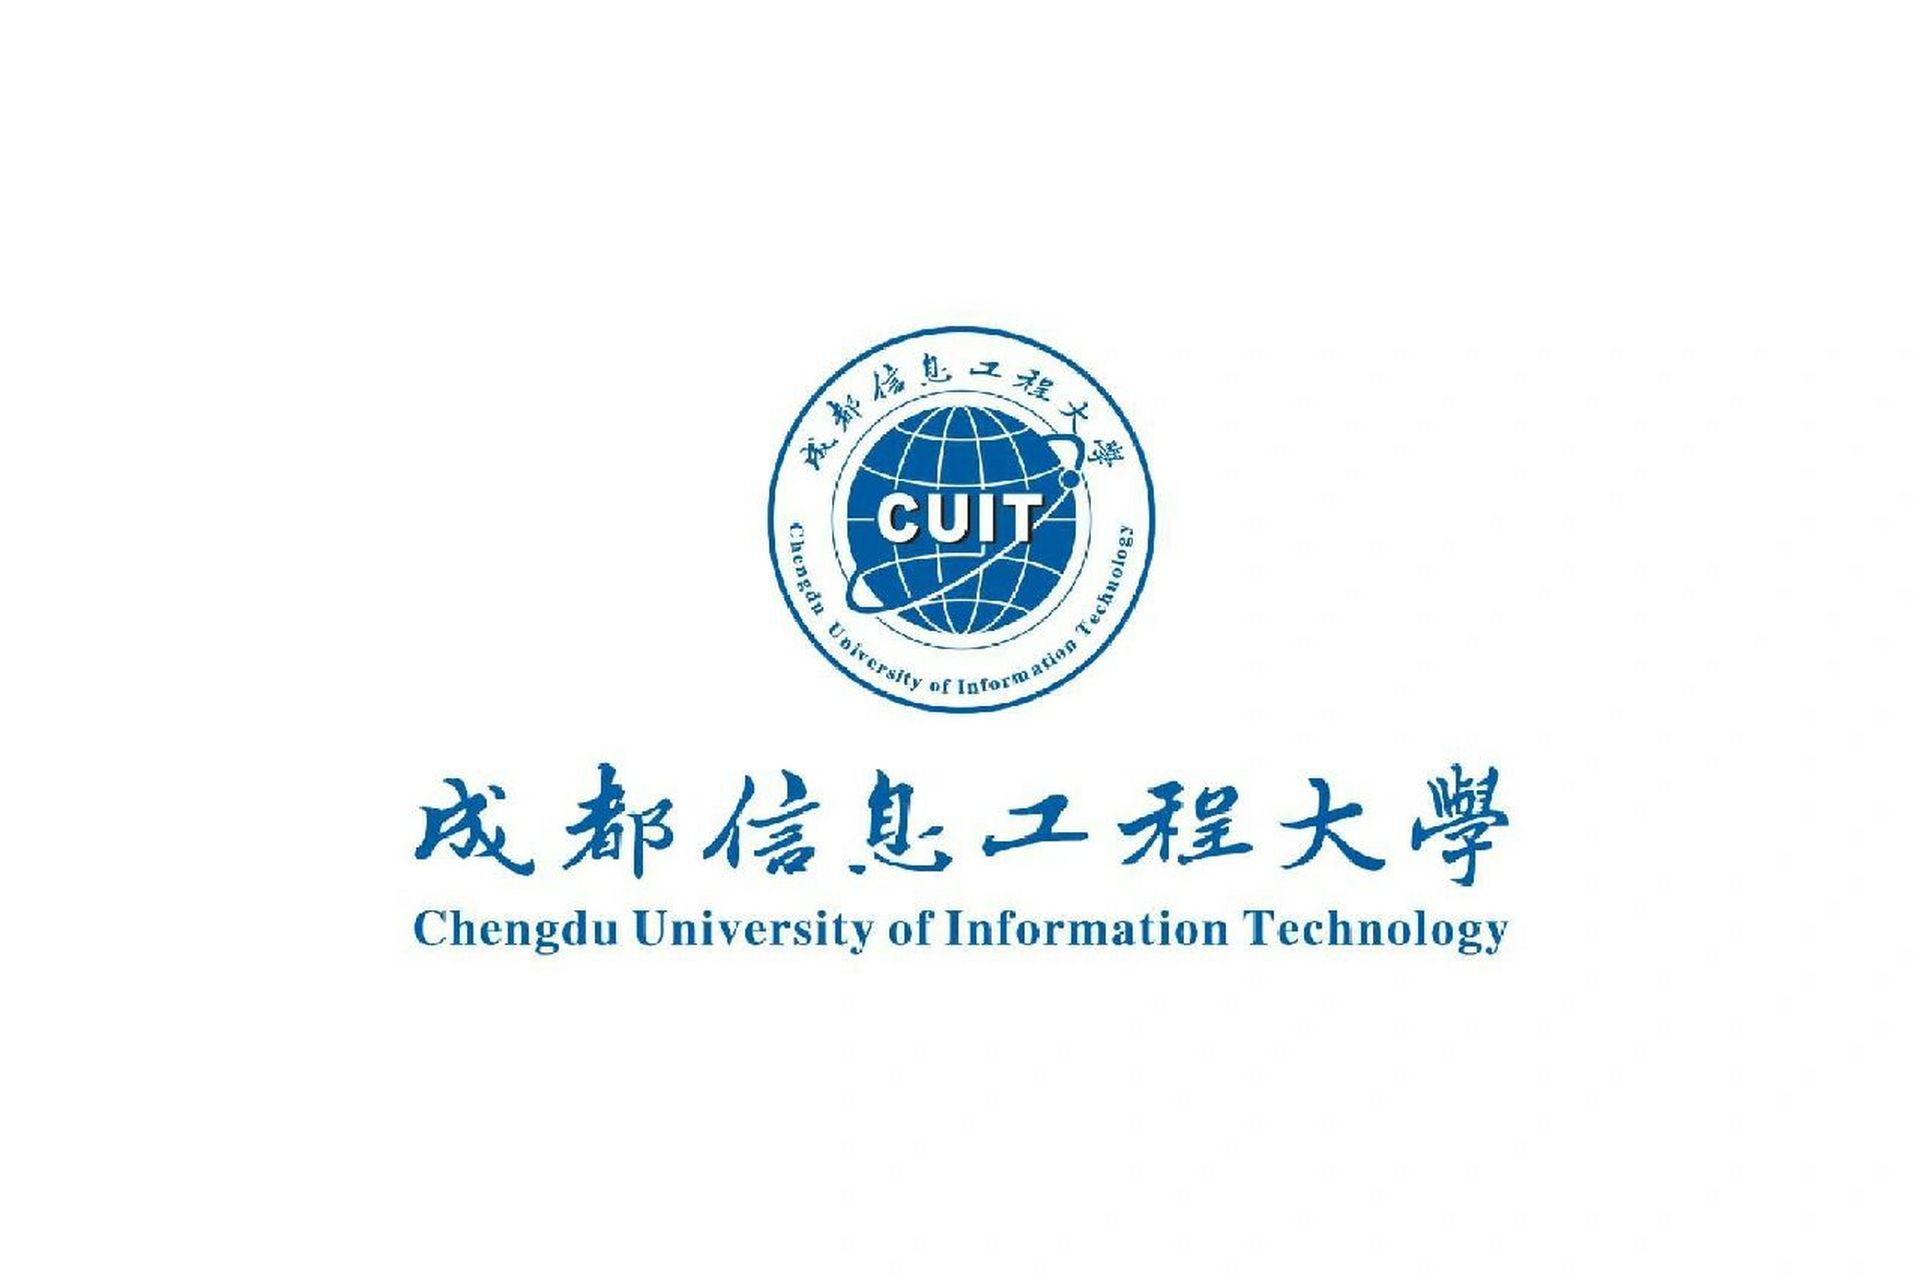 成都信息工程大学 成都信息工程大学,位于四川省成都市,简称成信大